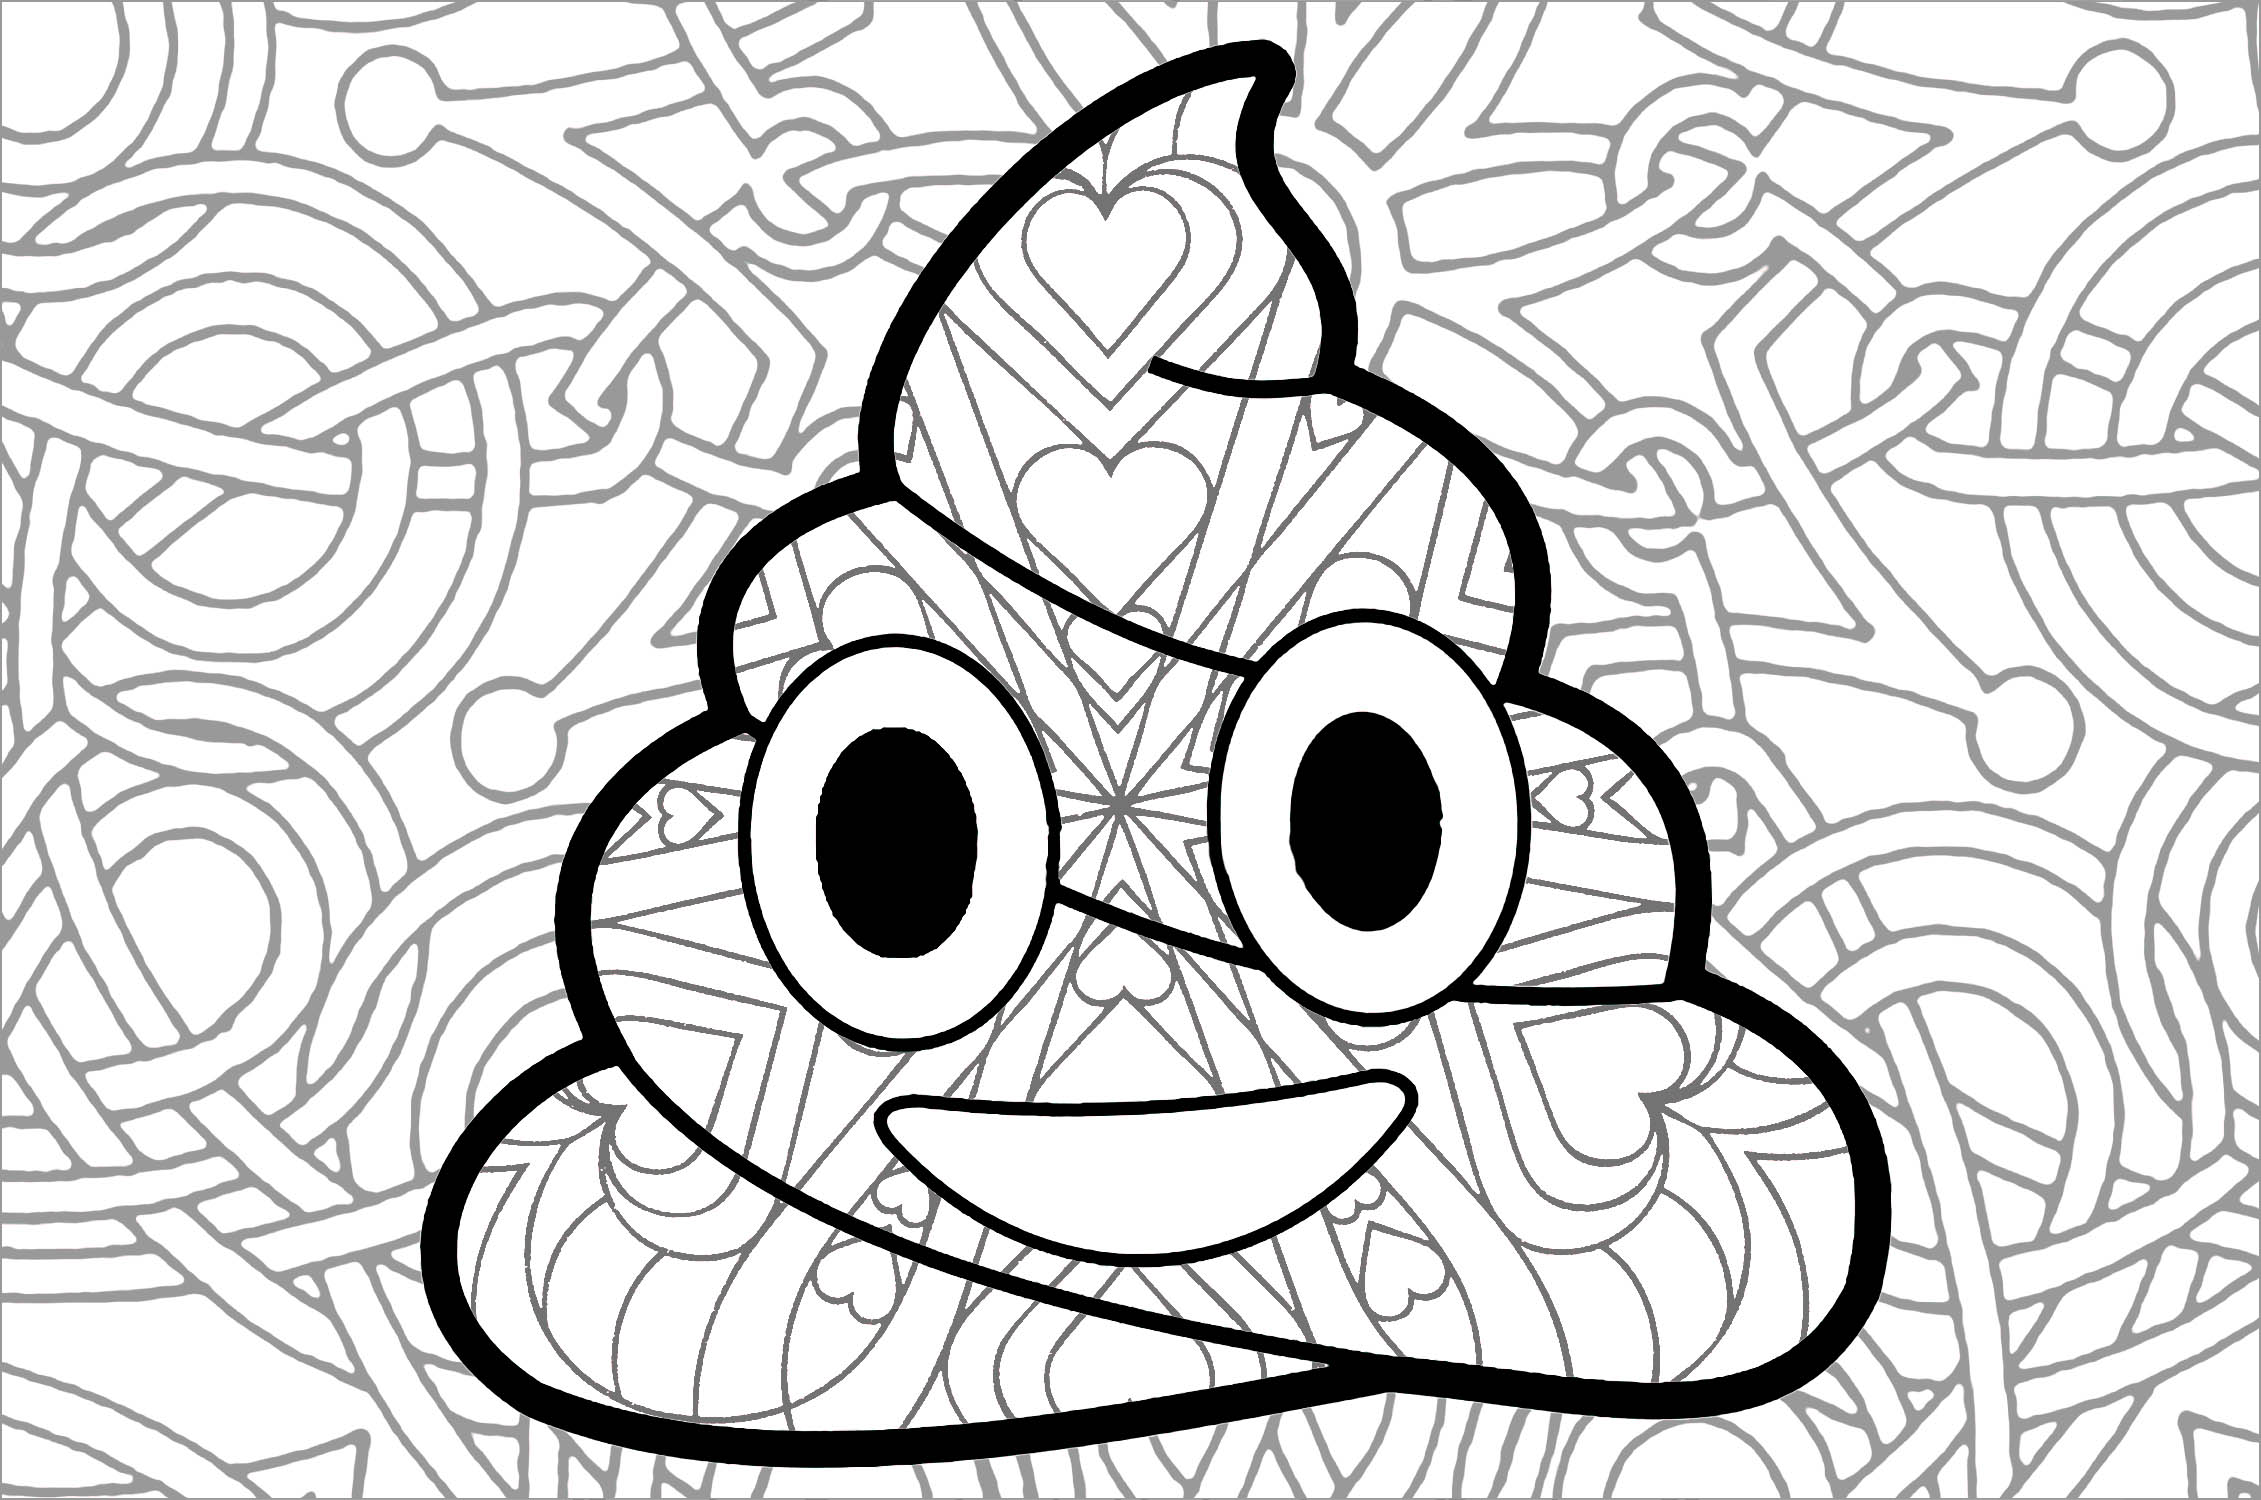 Farbe der berühmten Poop Emoji, seine großen Augen und Lächeln ... Wir haben schöne Muster außerhalb und innerhalb hinzugefügt :)